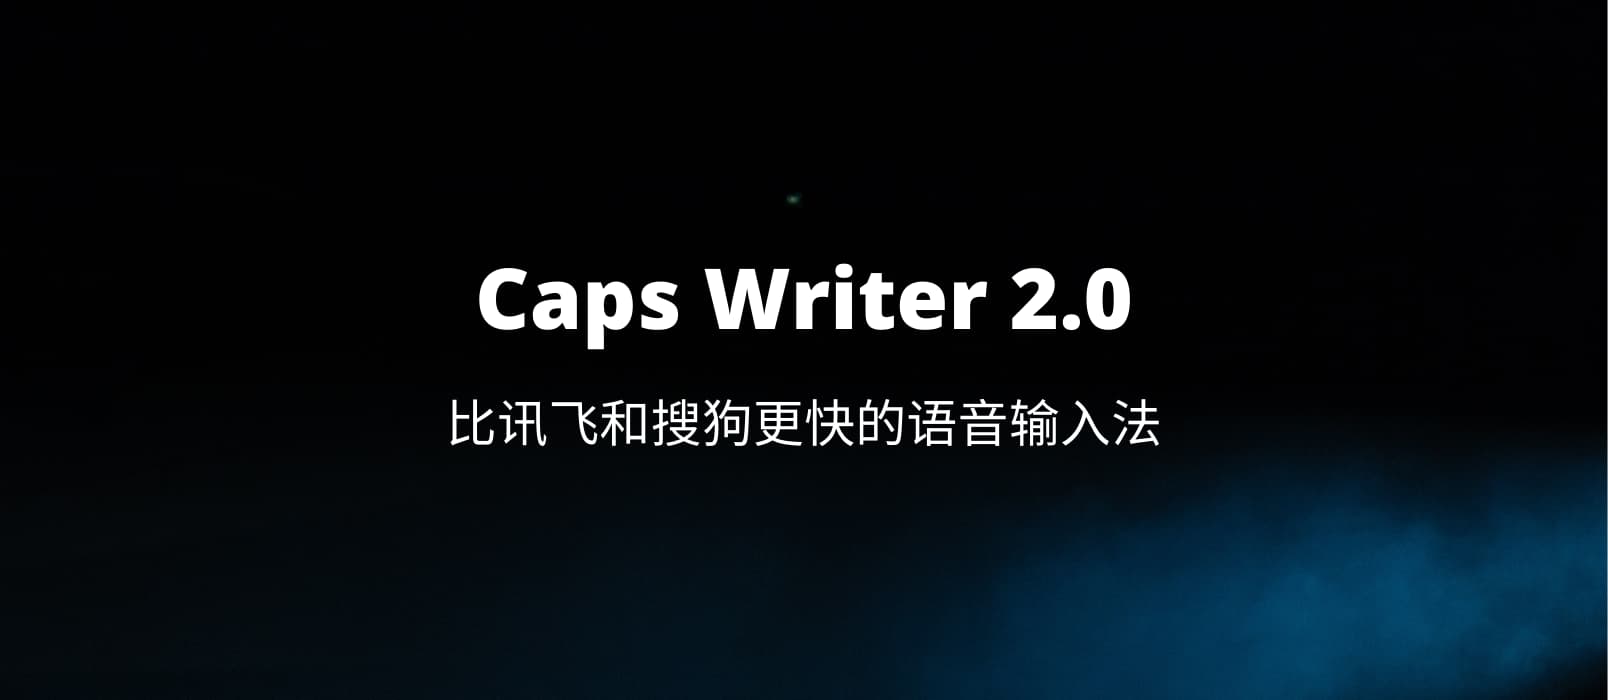 Caps Writer 2.0 - 比讯飞和搜狗更快的语音输入法[Win]